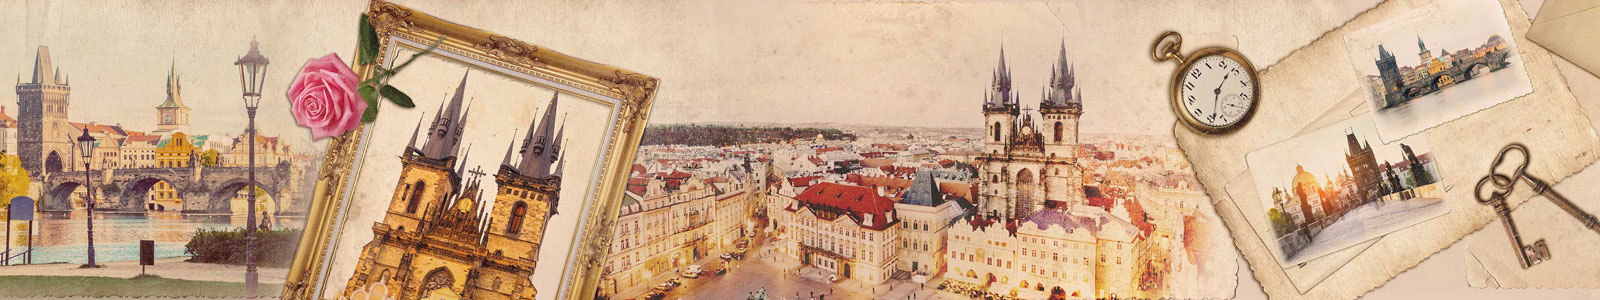 №5709 - Любимая Прага